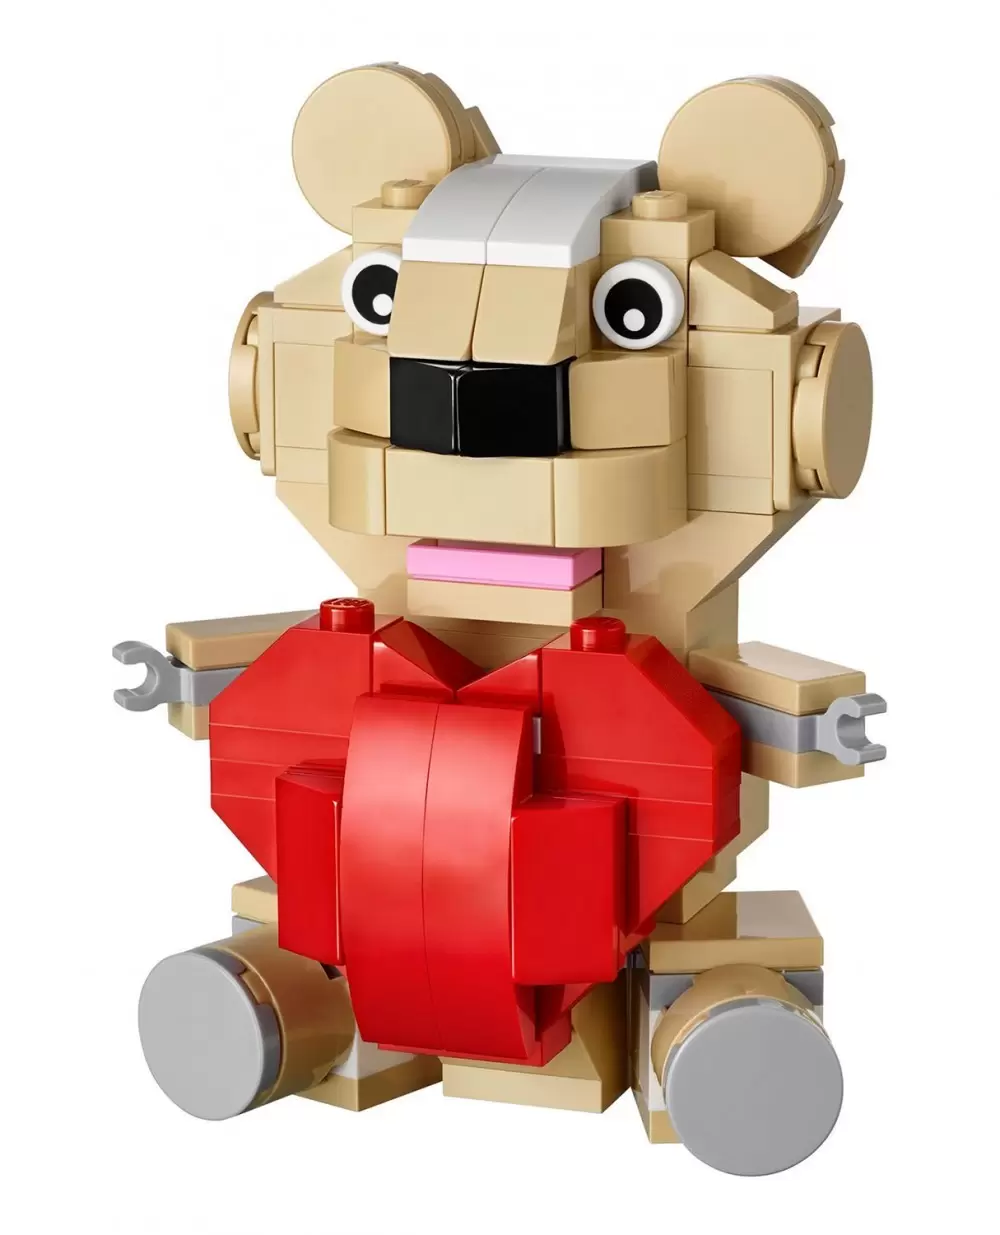 LEGO Saisonnier - Valentine Teddy Bear